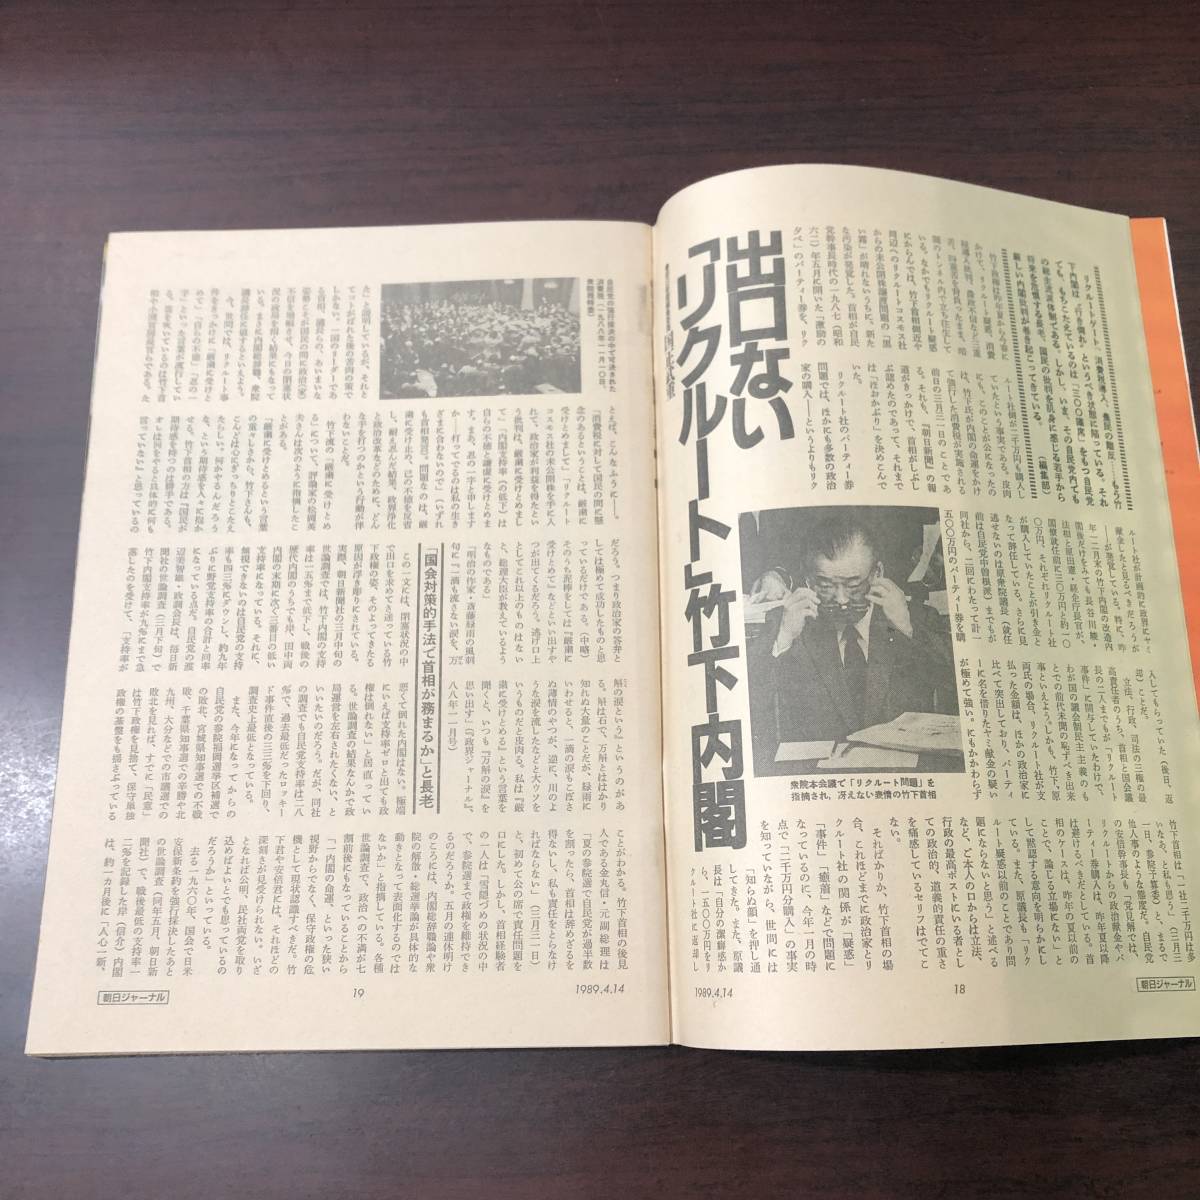 A02【ゆうメール送料無料】朝日ジャーナル 1989年4月14日号 VOL.31 NO.16の画像5